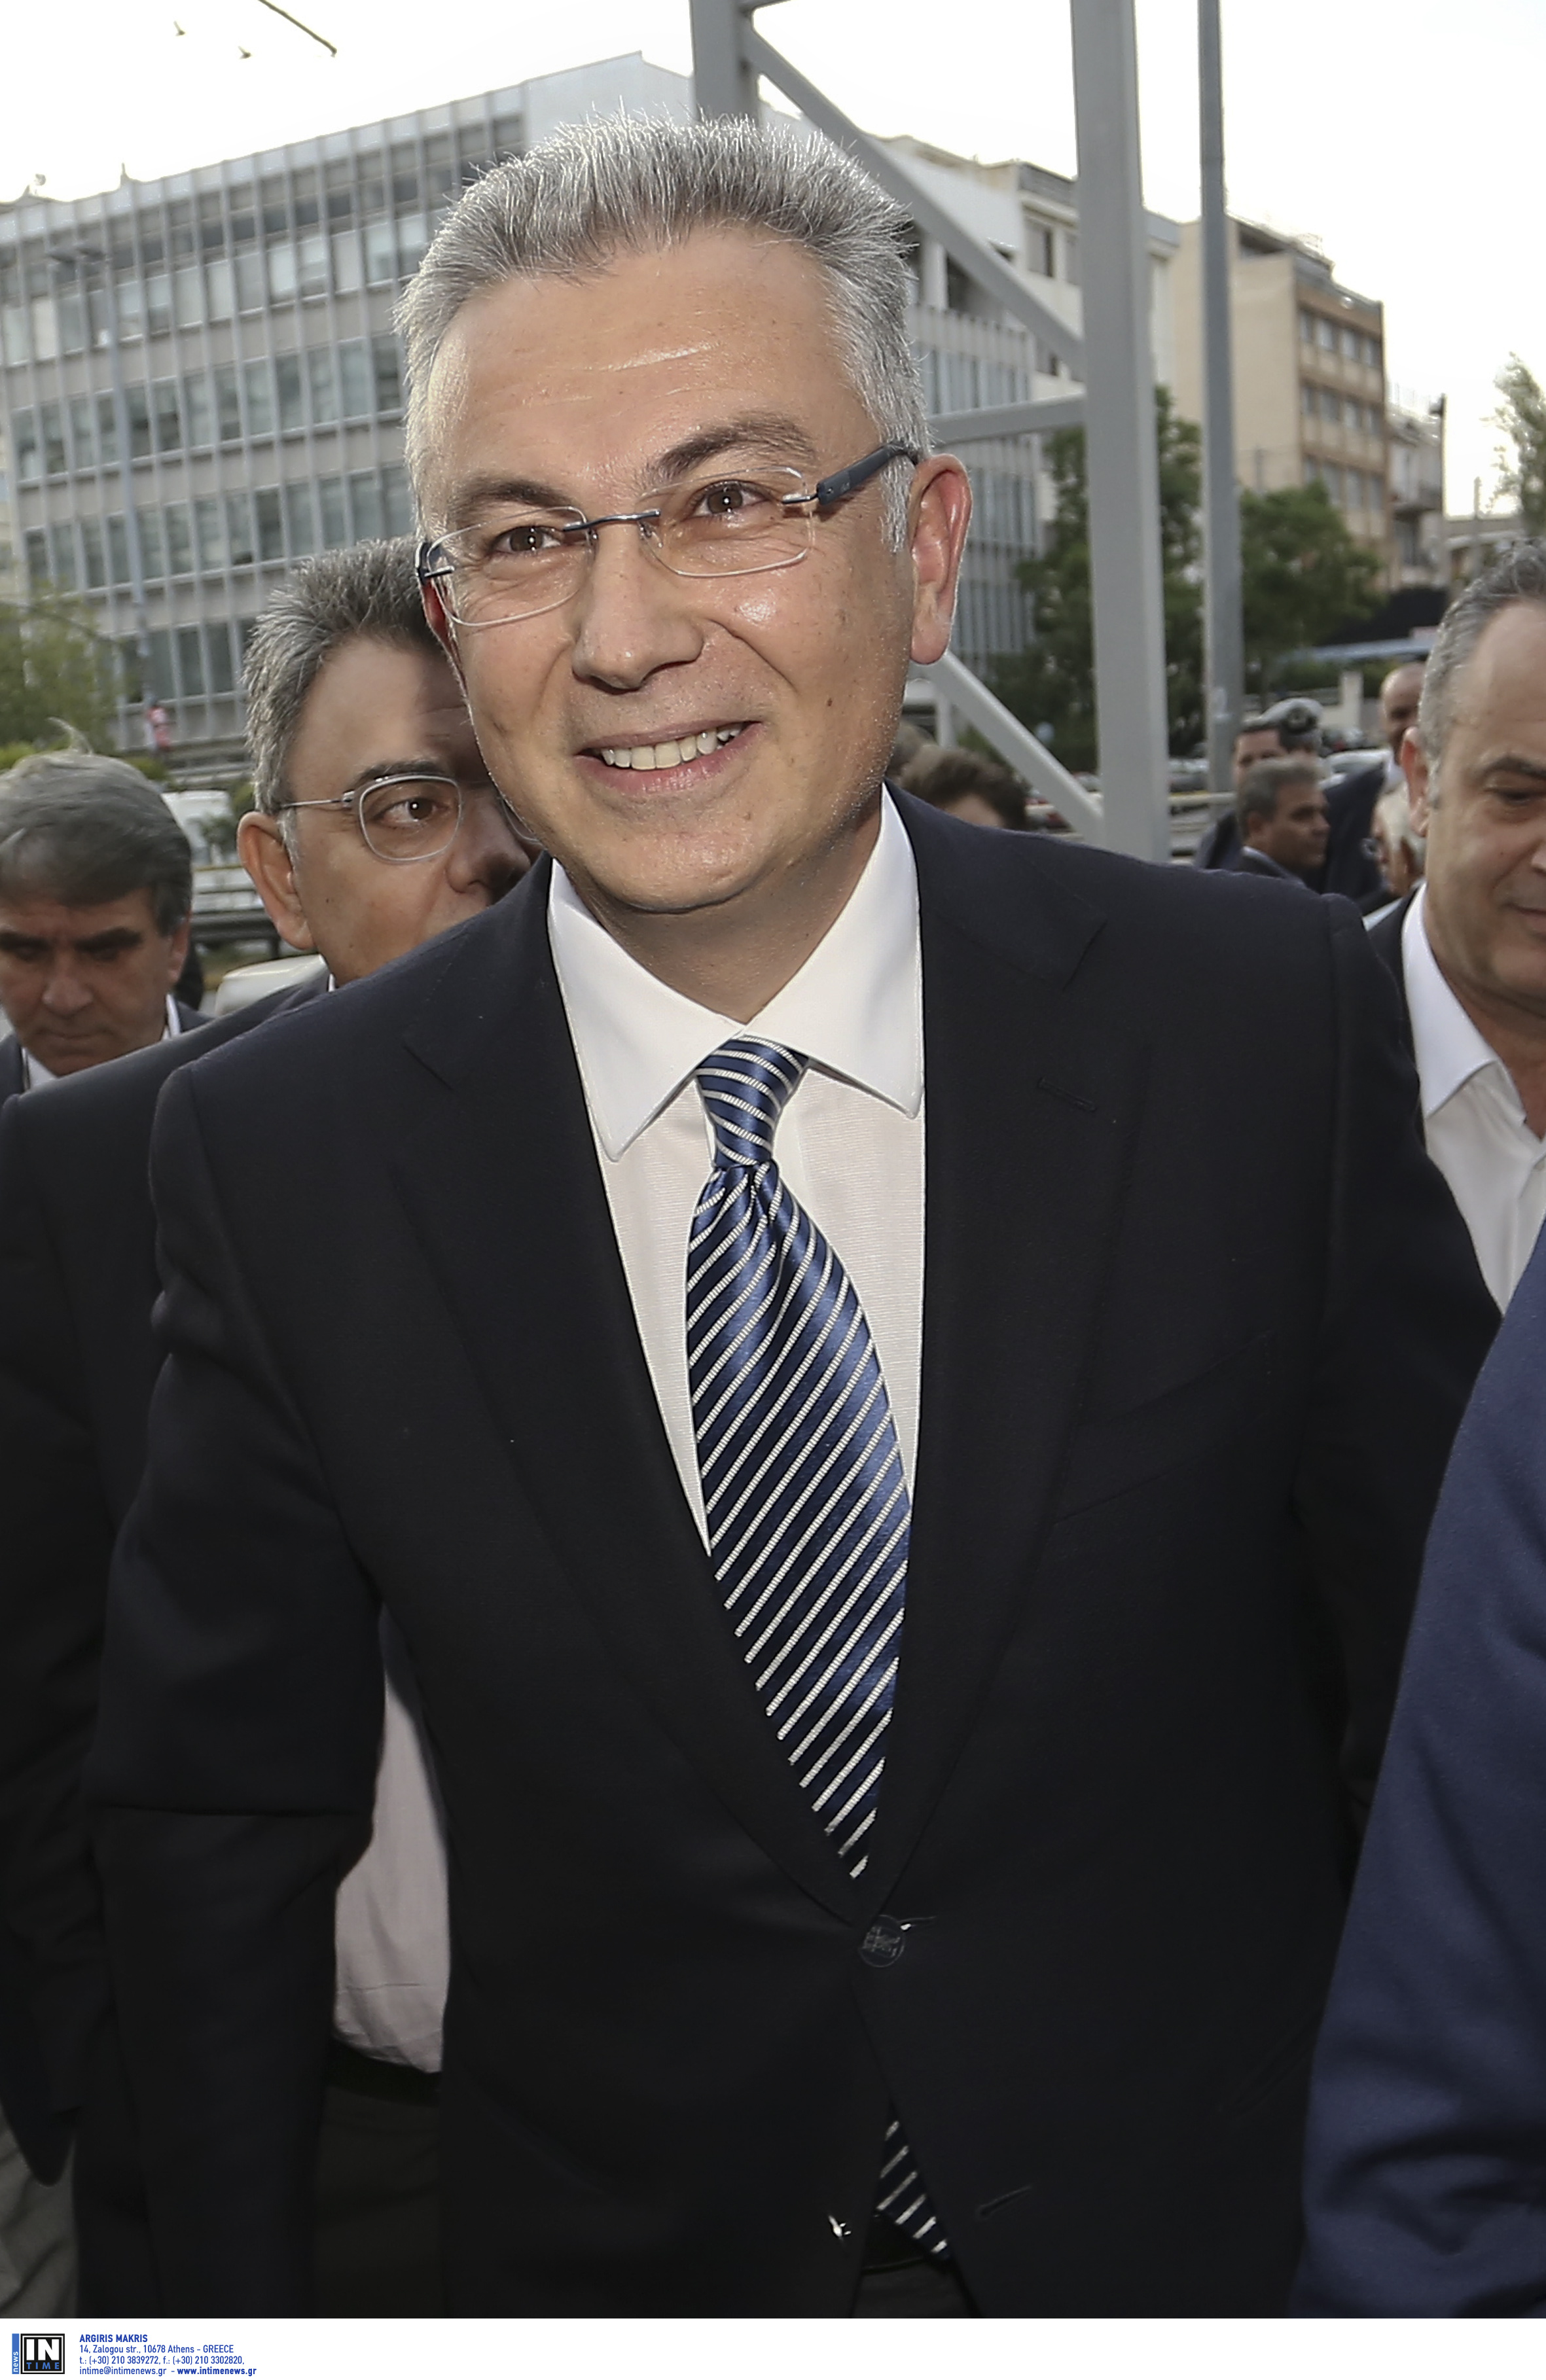 Θ. Ρουσόπουλος: Ηγέτης επιπέδου Ανδρέα Παπανδρέου ο Αλέξης Τσίπρας